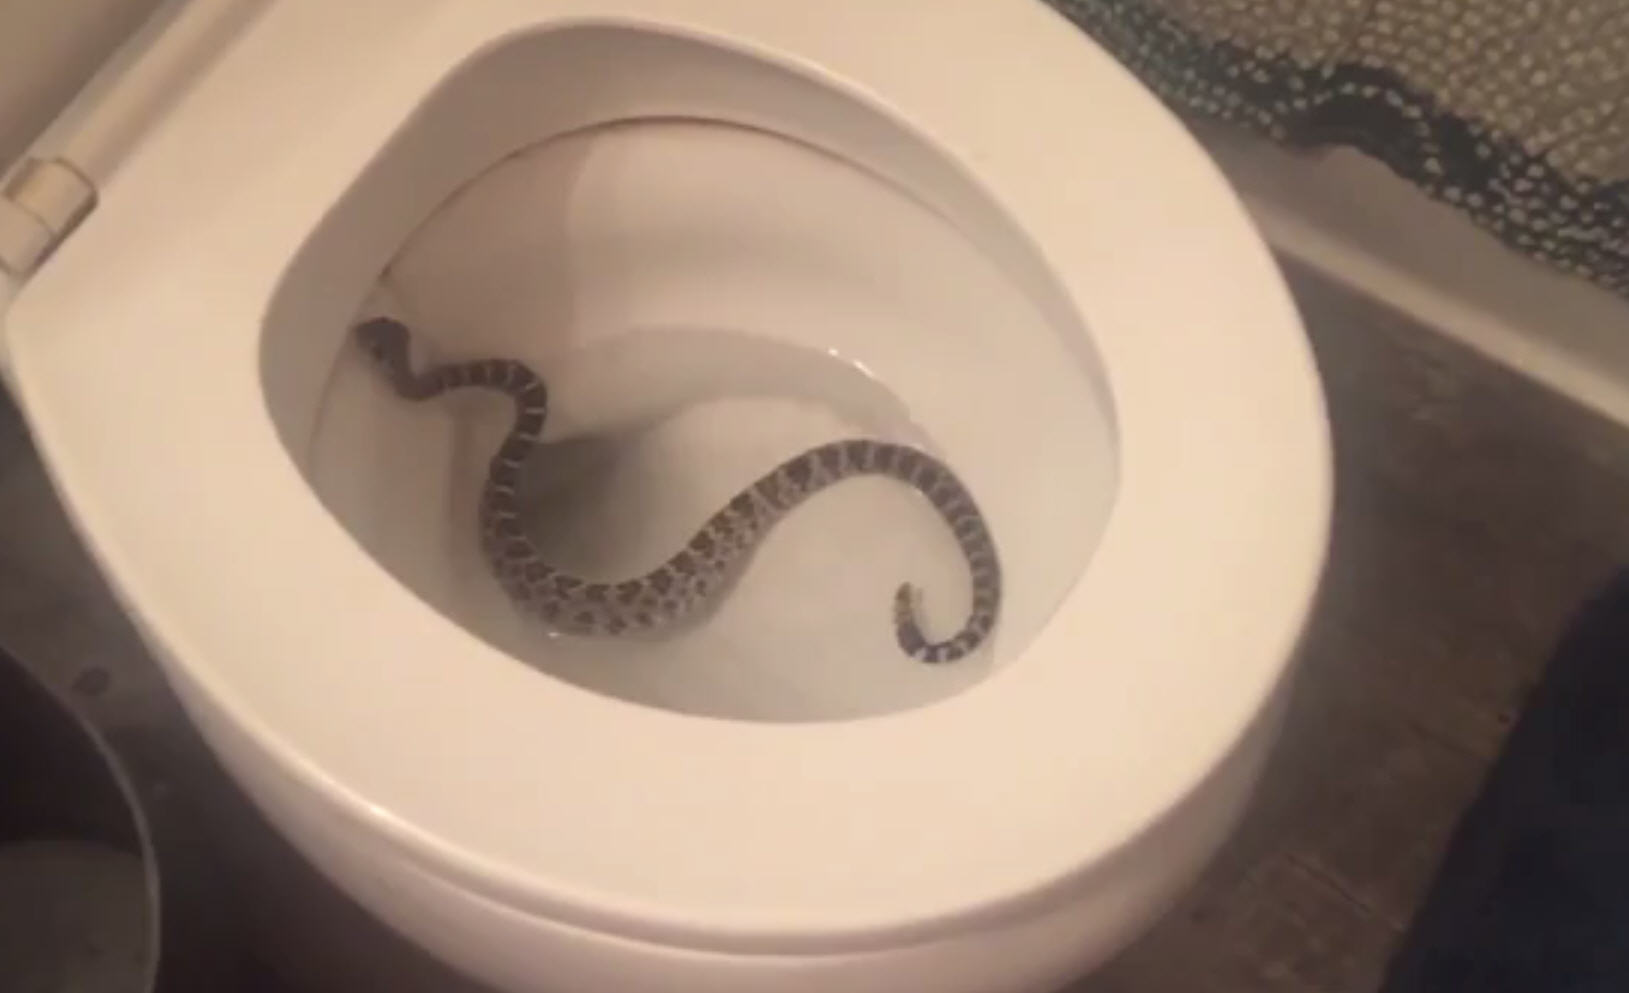 Video: Girlfriend finds rattlesnake in toilet, screams for boyfriend's help - Houston ...